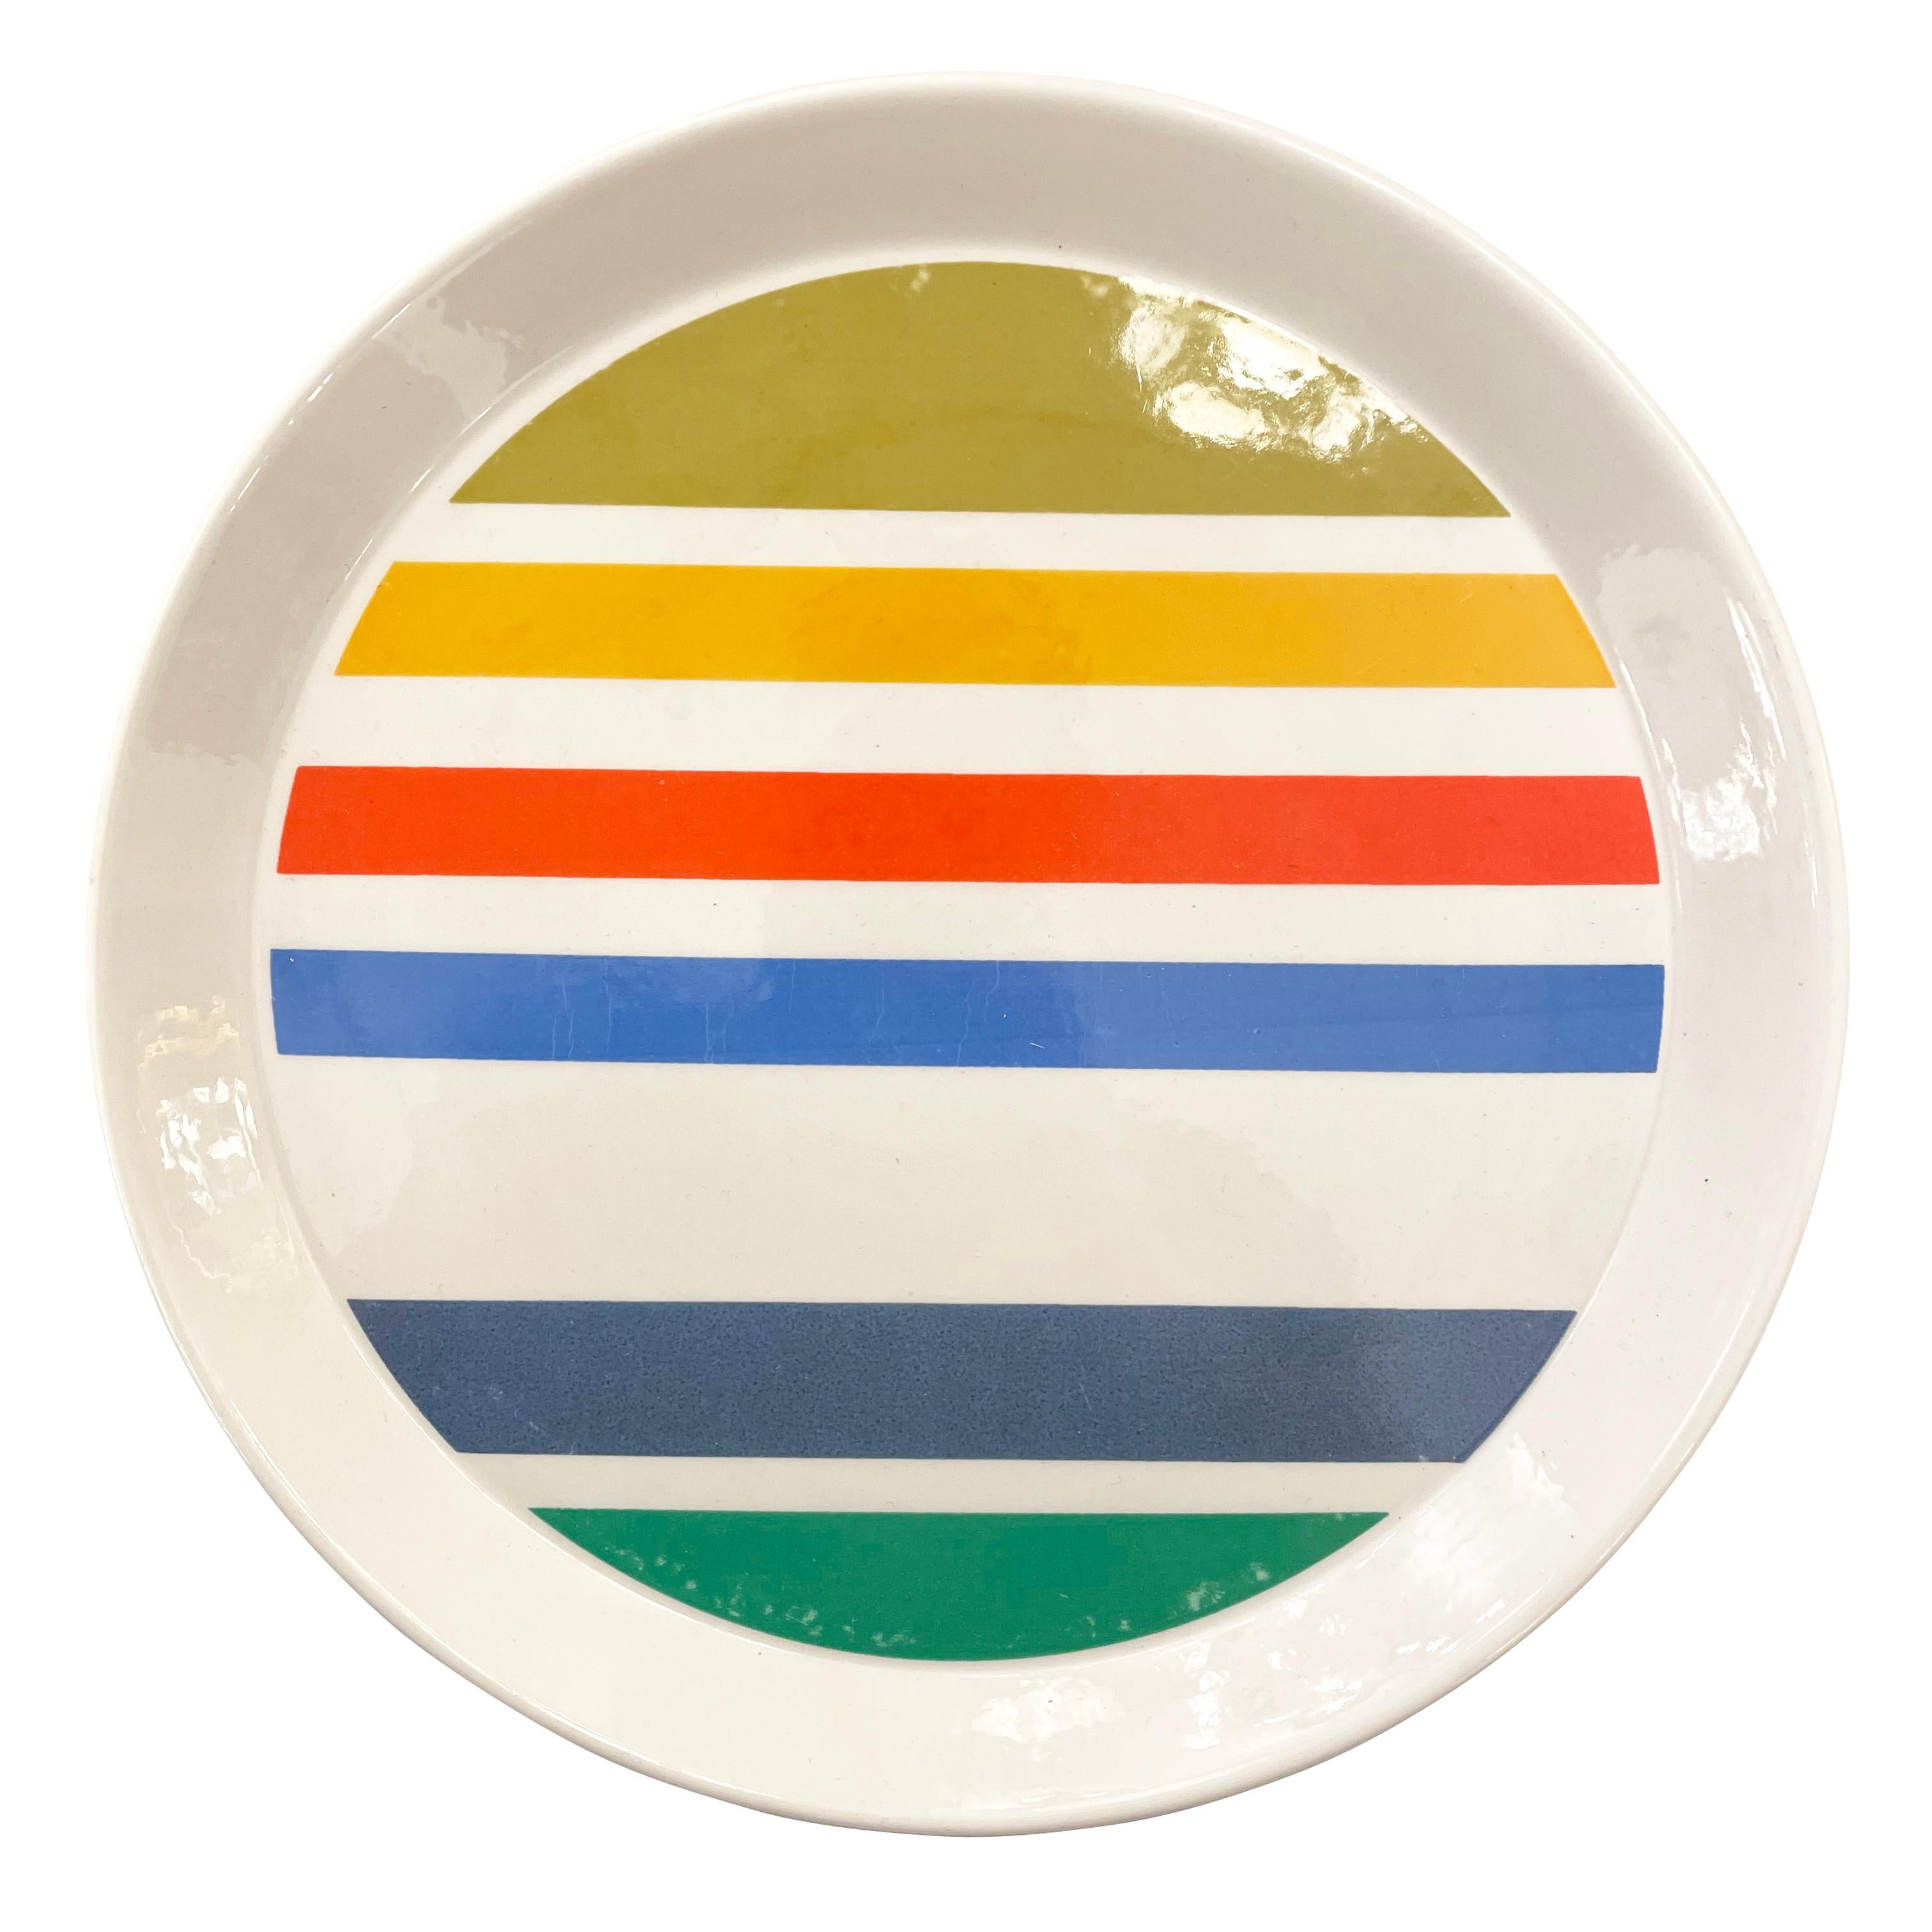 Gio Ponti Plate for Ceramiche Franco Pozzi